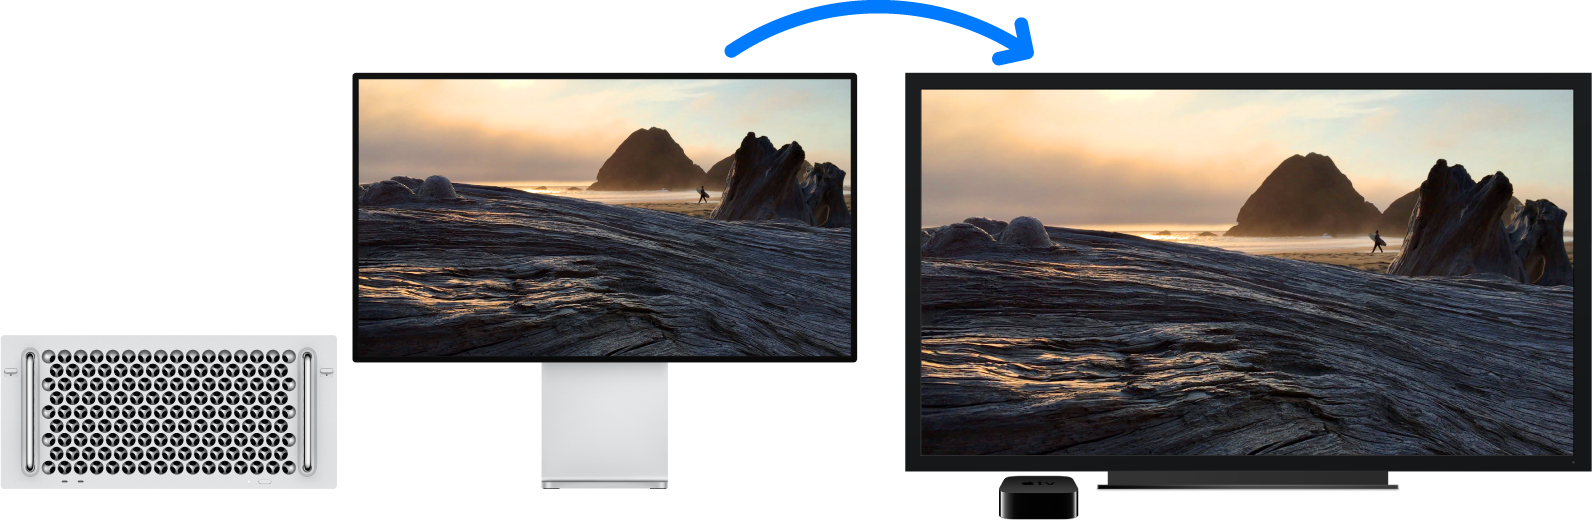 Mac Pro, ktorého obsah je zrkadlený na veľkom HDTV pomocou Apple TV.